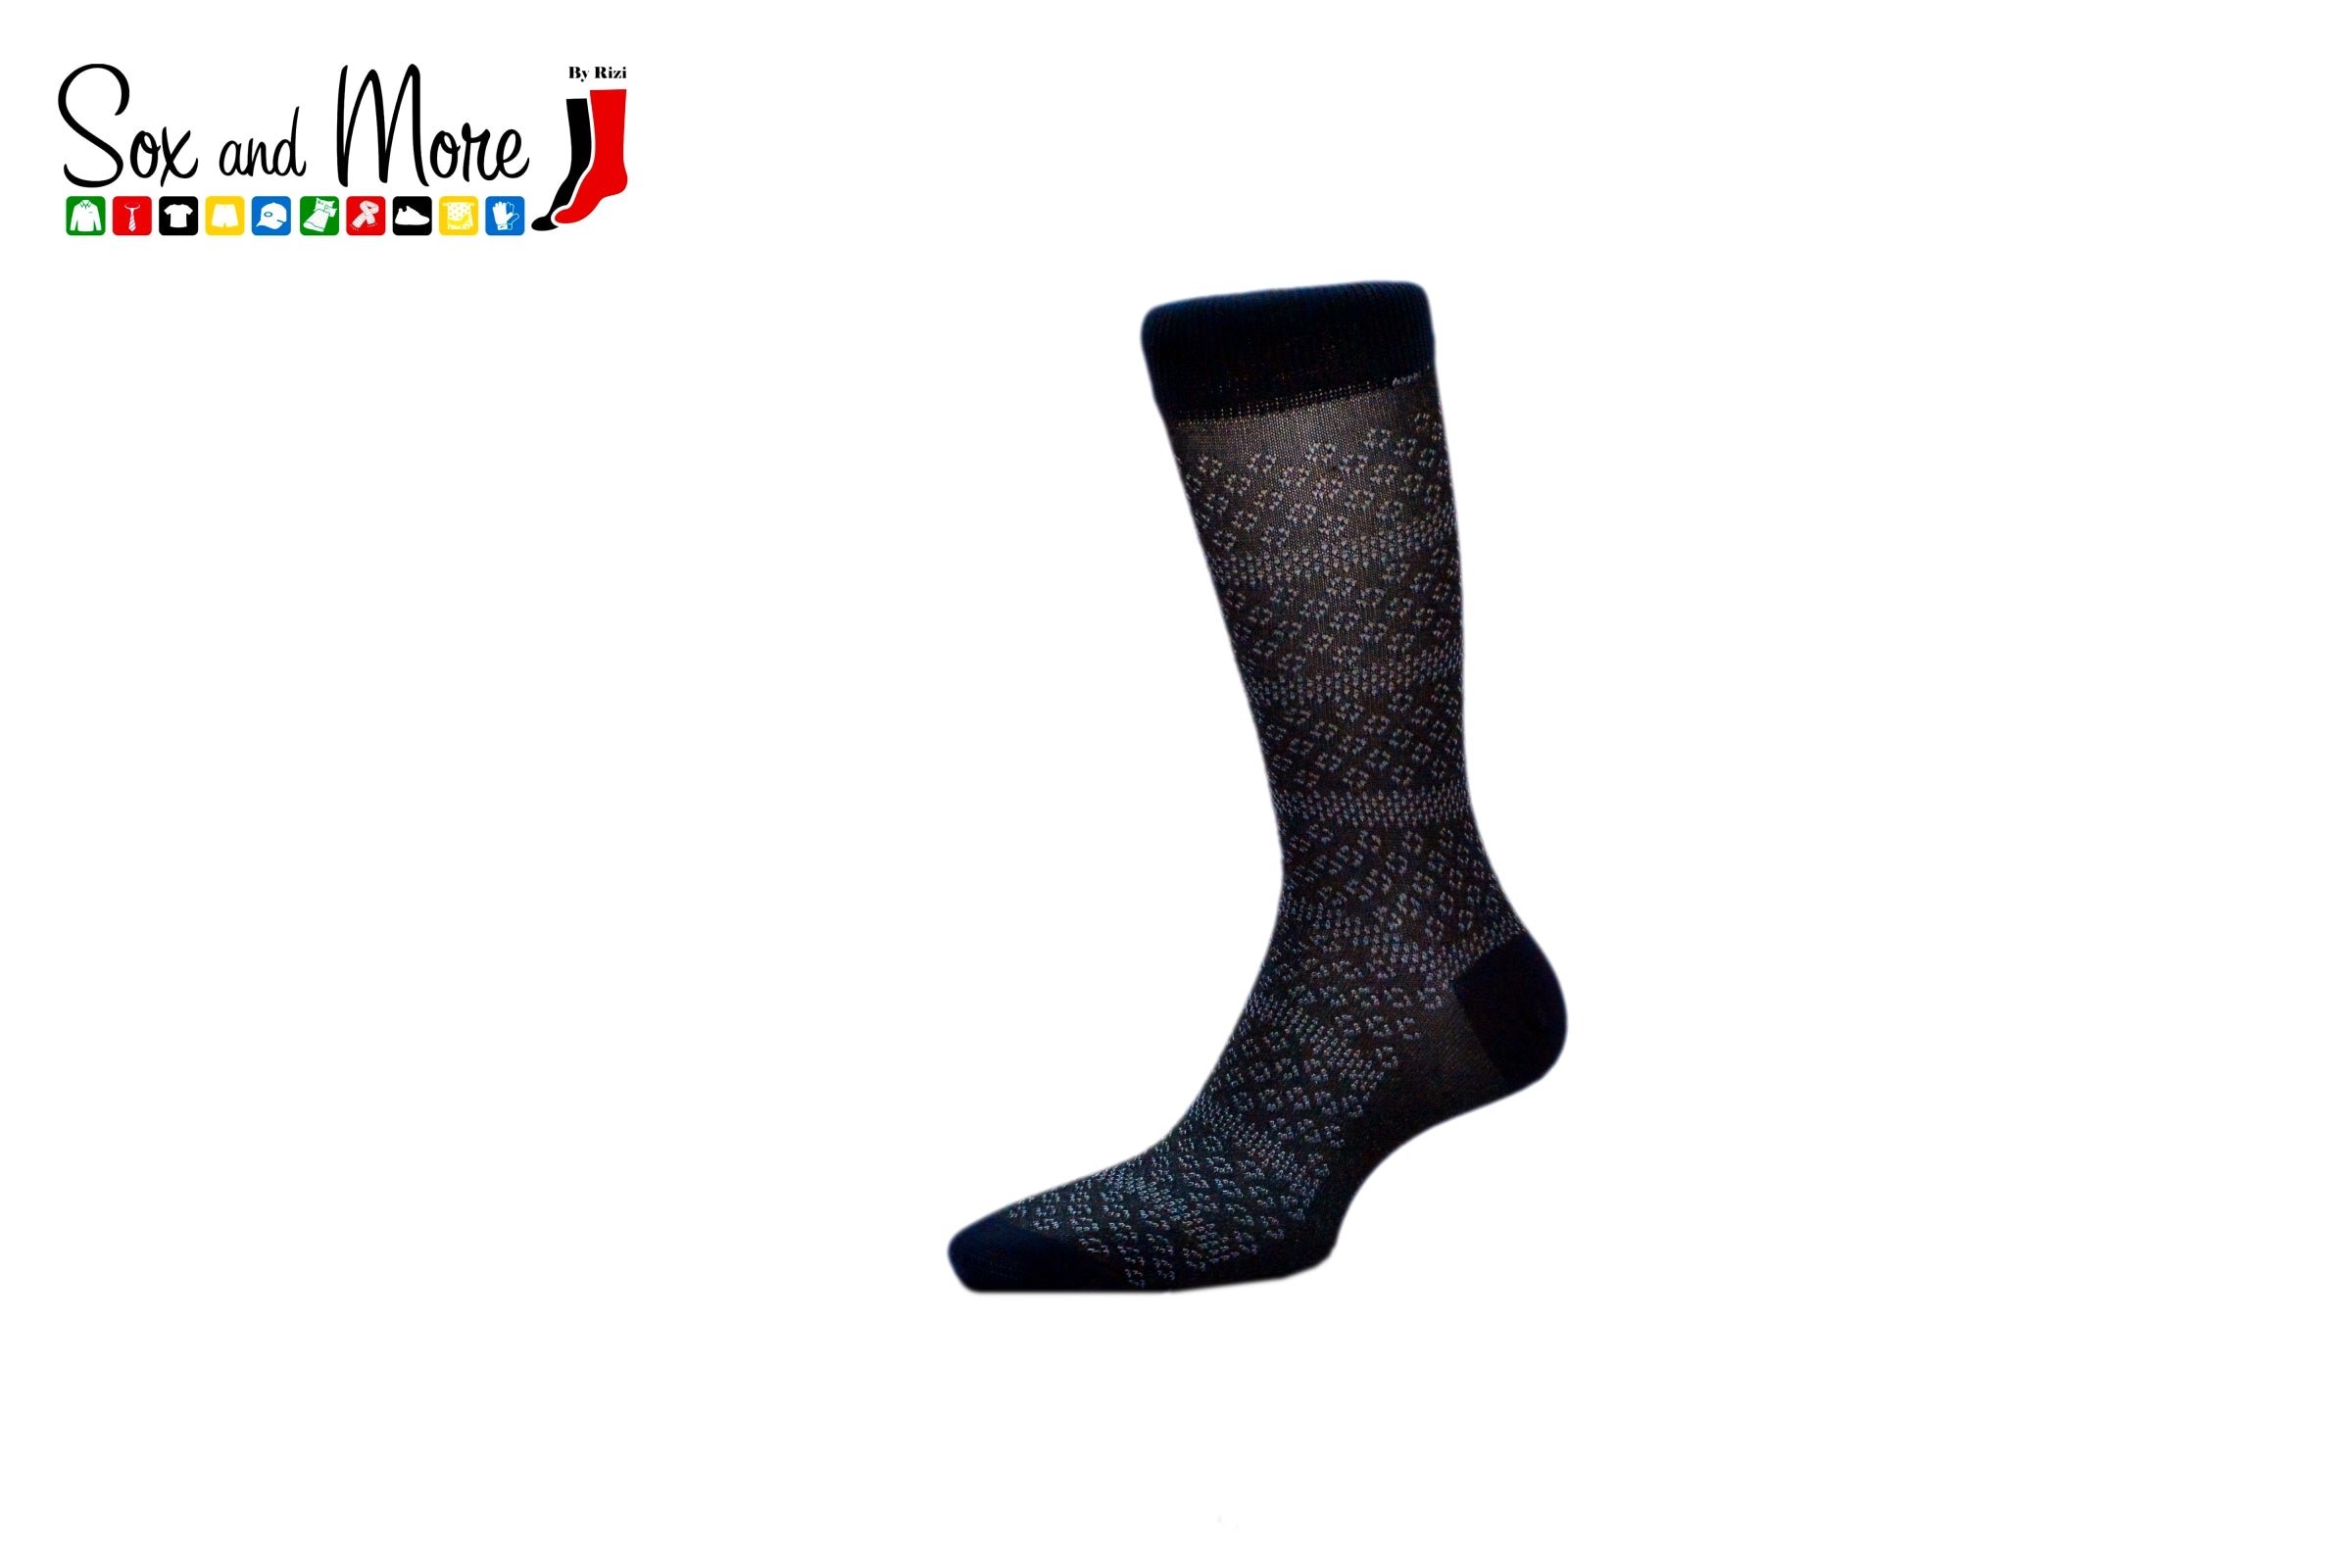 Men's Mercerized Block Spread socks